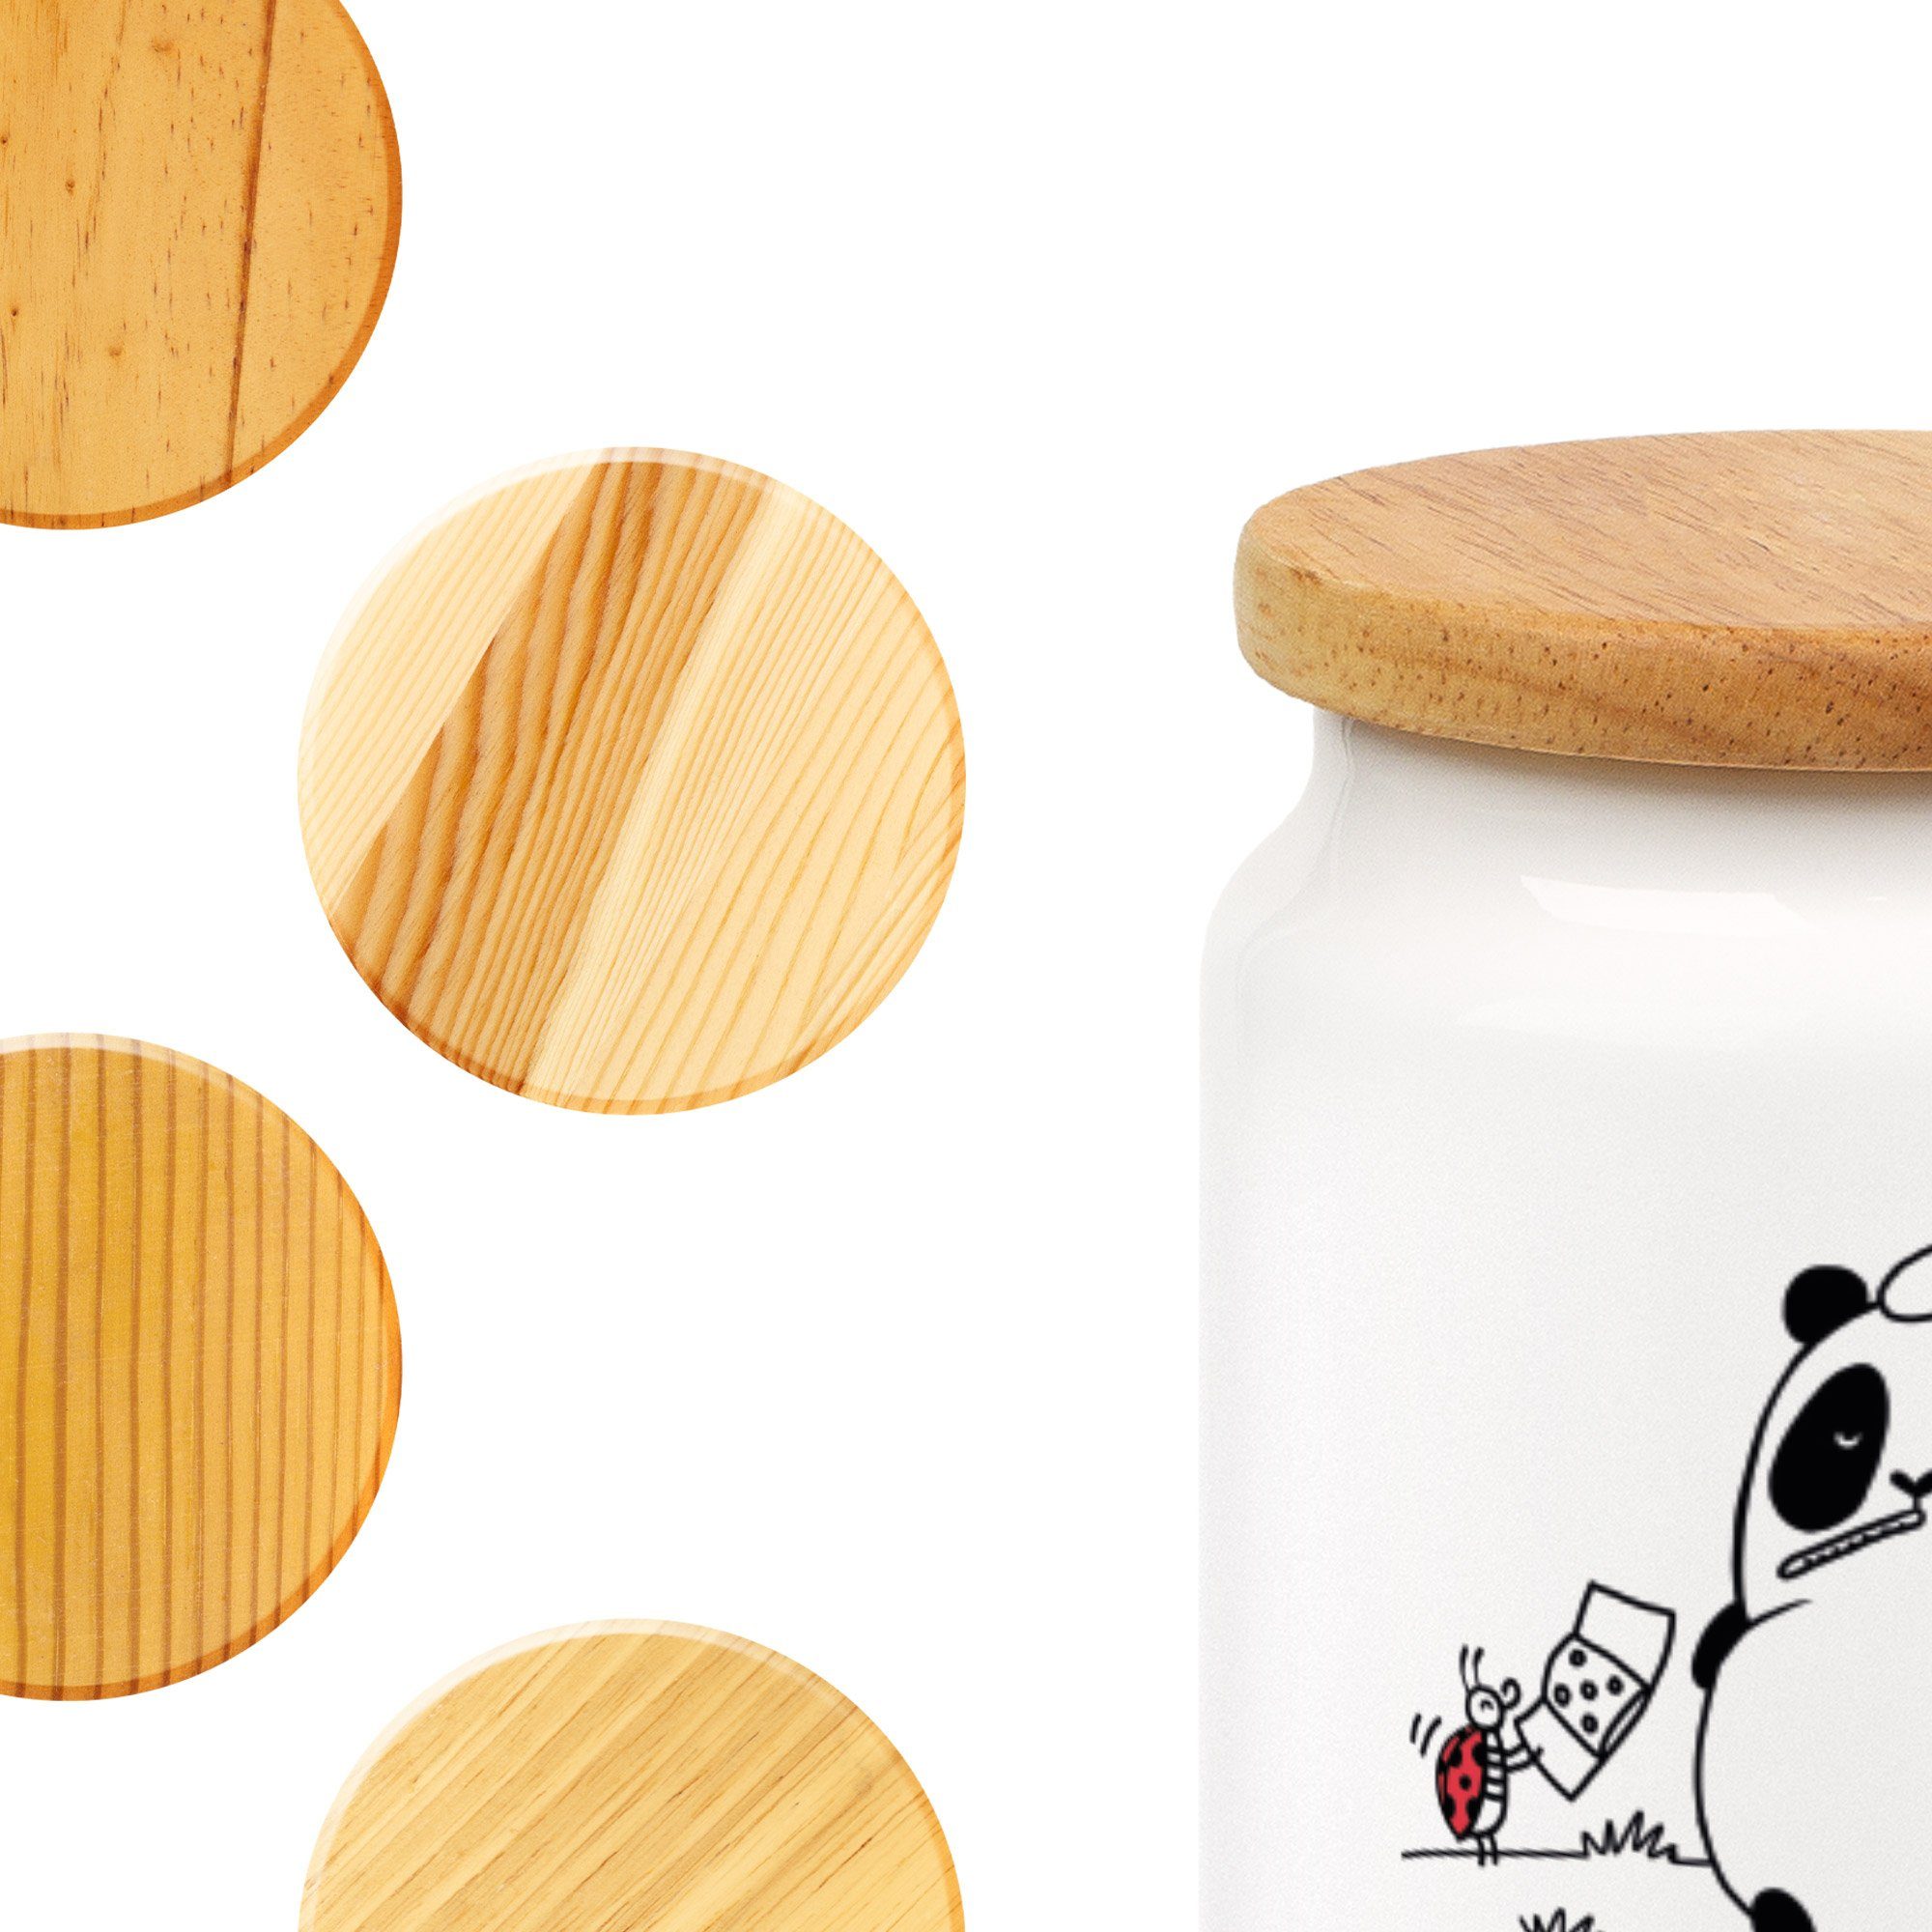 - Vorratsdose - Keksdose, & Besserung Keramik, Gute Vorratsbehäl, & Mr. Panda Mrs. (1-tlg) Easy Geschenk, Weiß Peasy